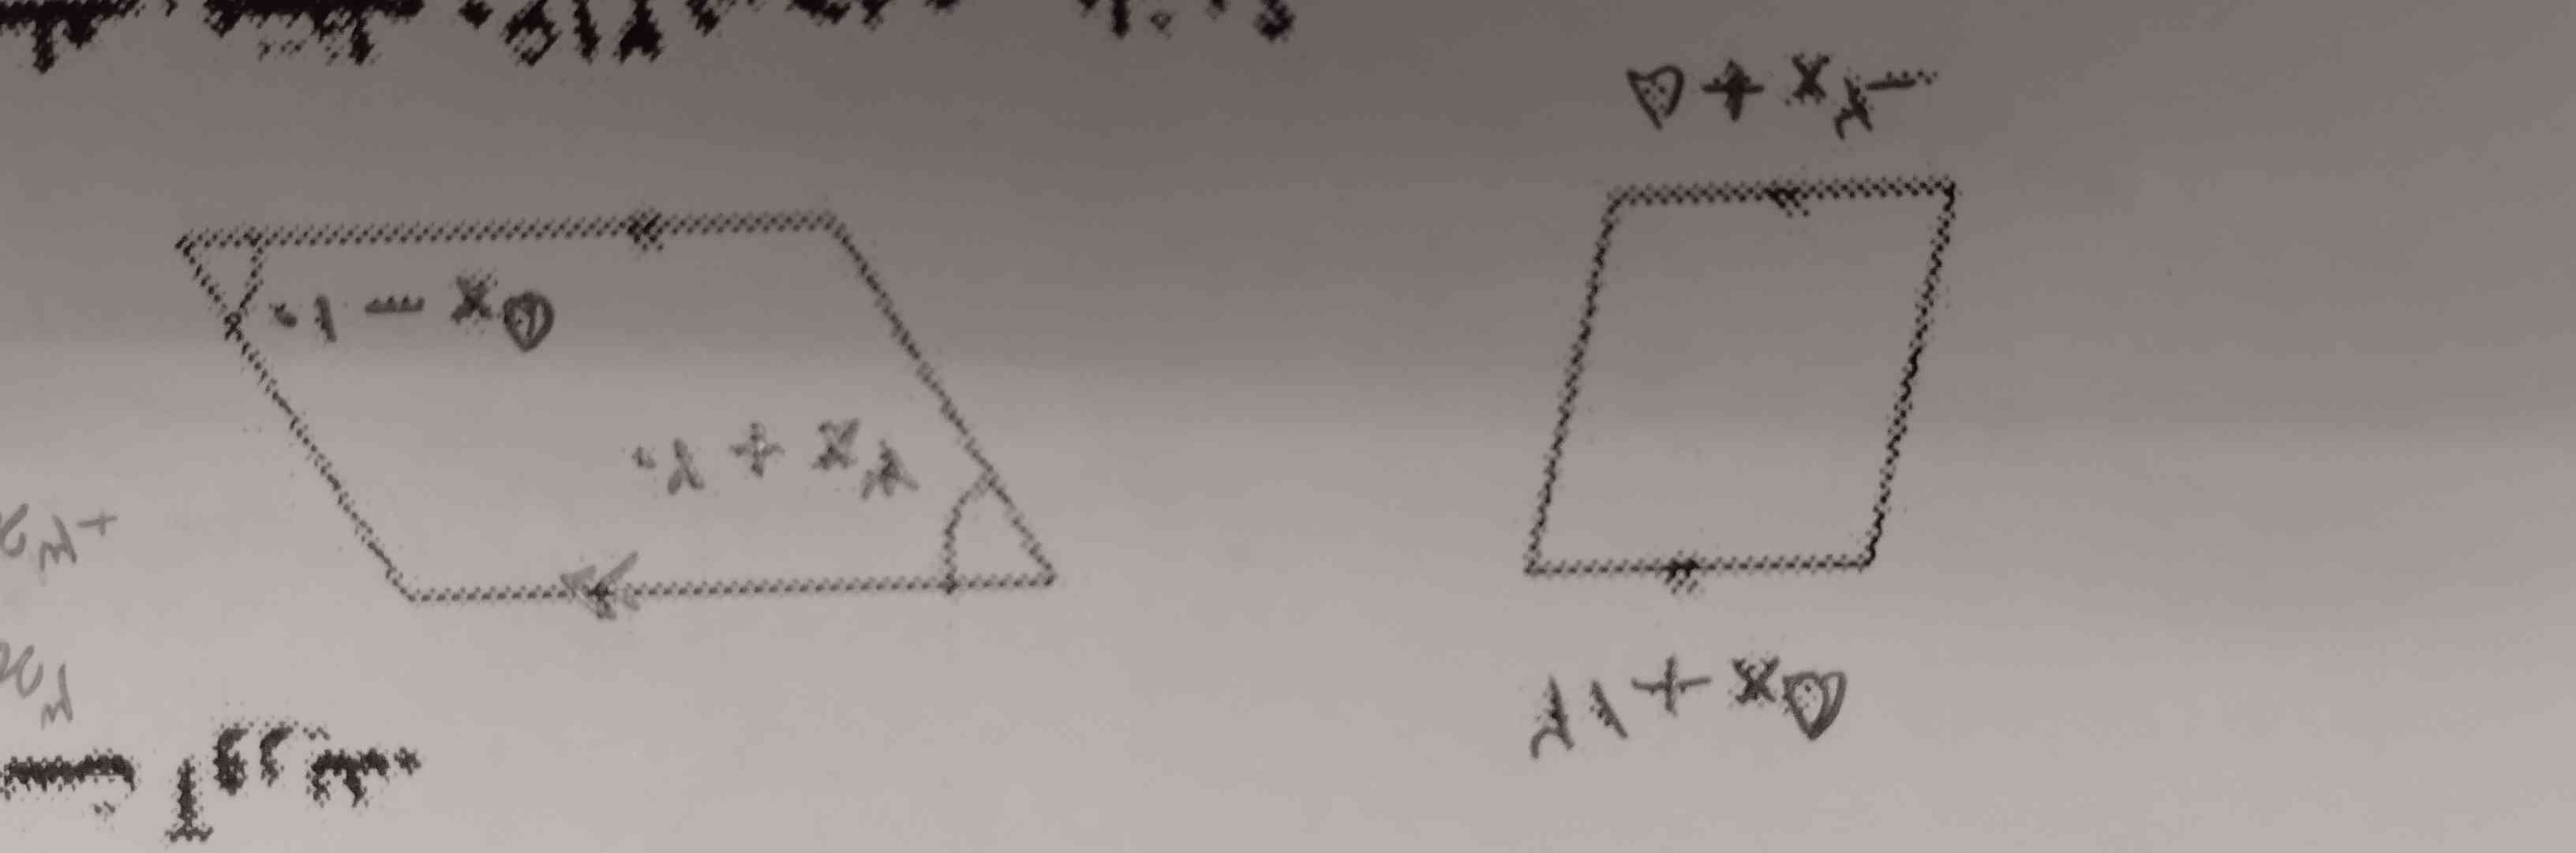 سوال: مقدار x را در شکل های زیر به دست آوردید 
(تاج میدم)